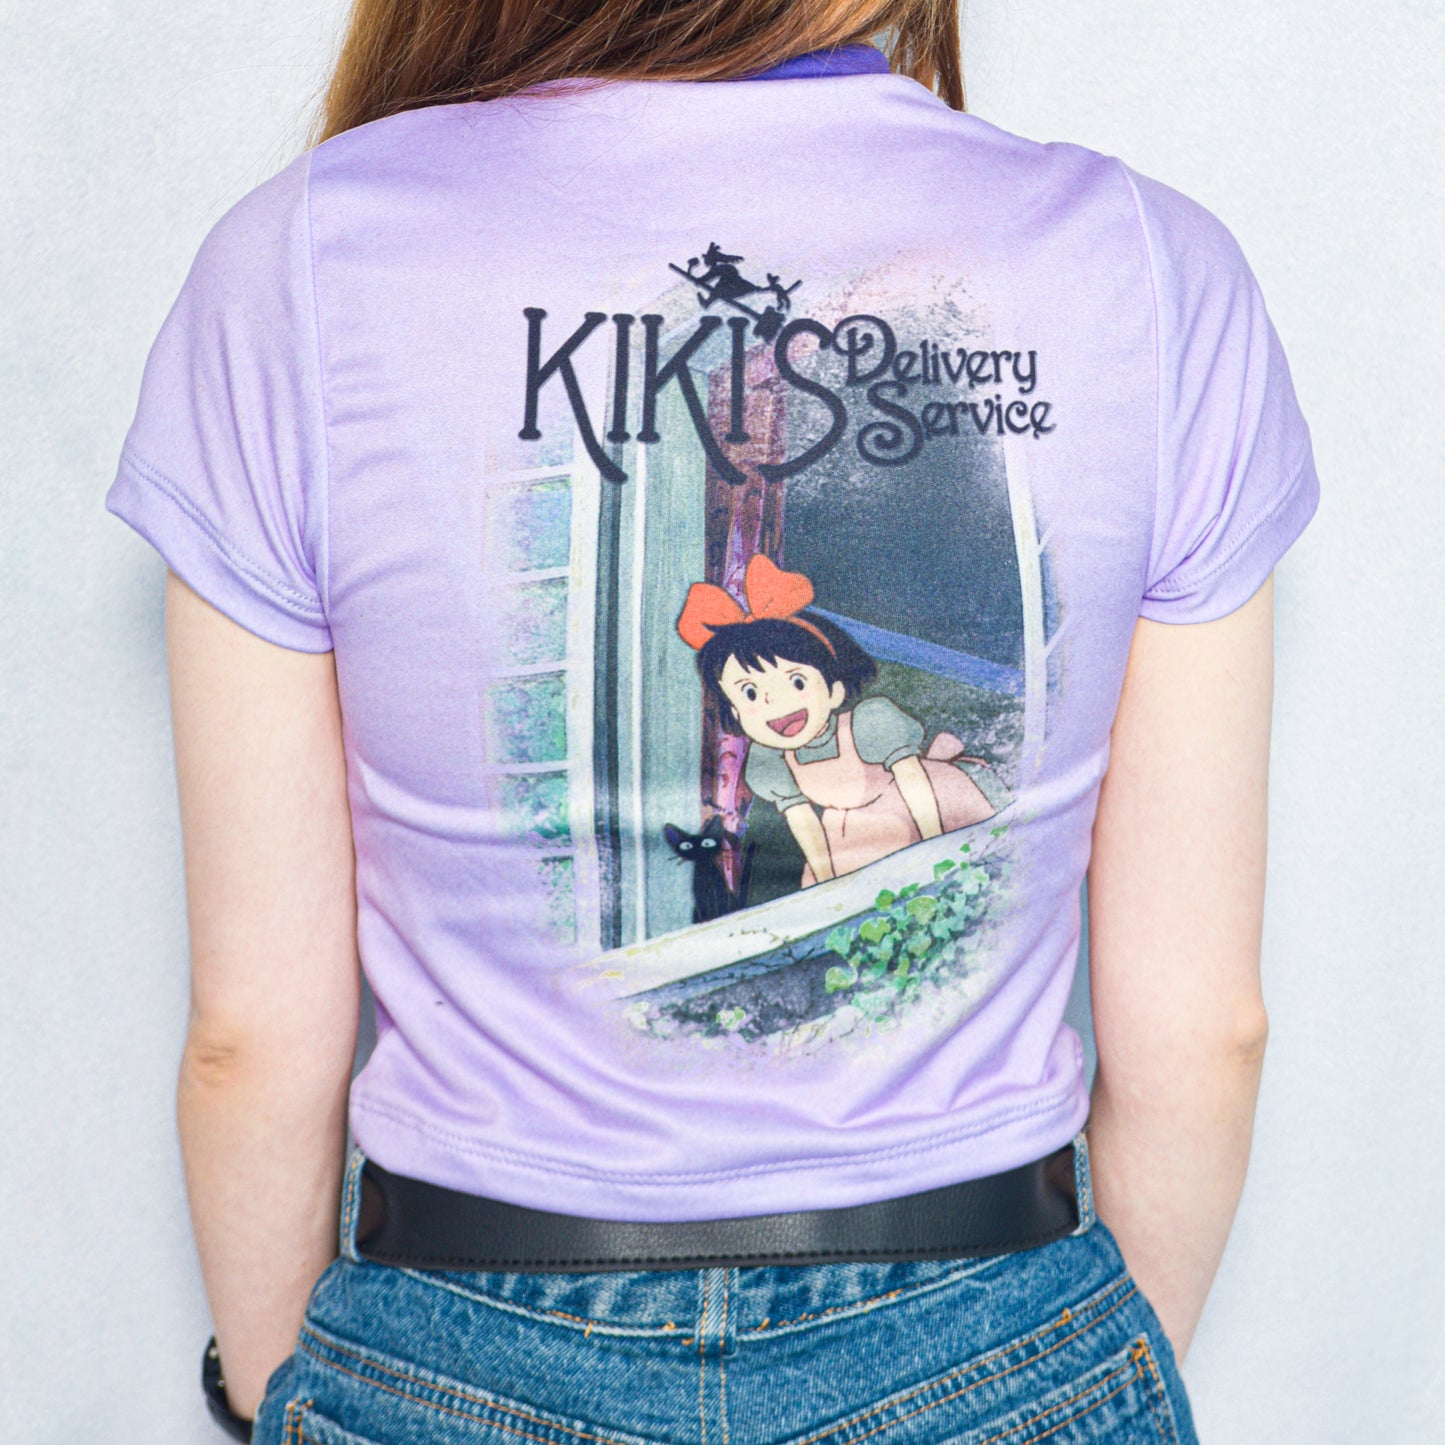 Camiseta Kiki's Delivery Service - Ghibli world